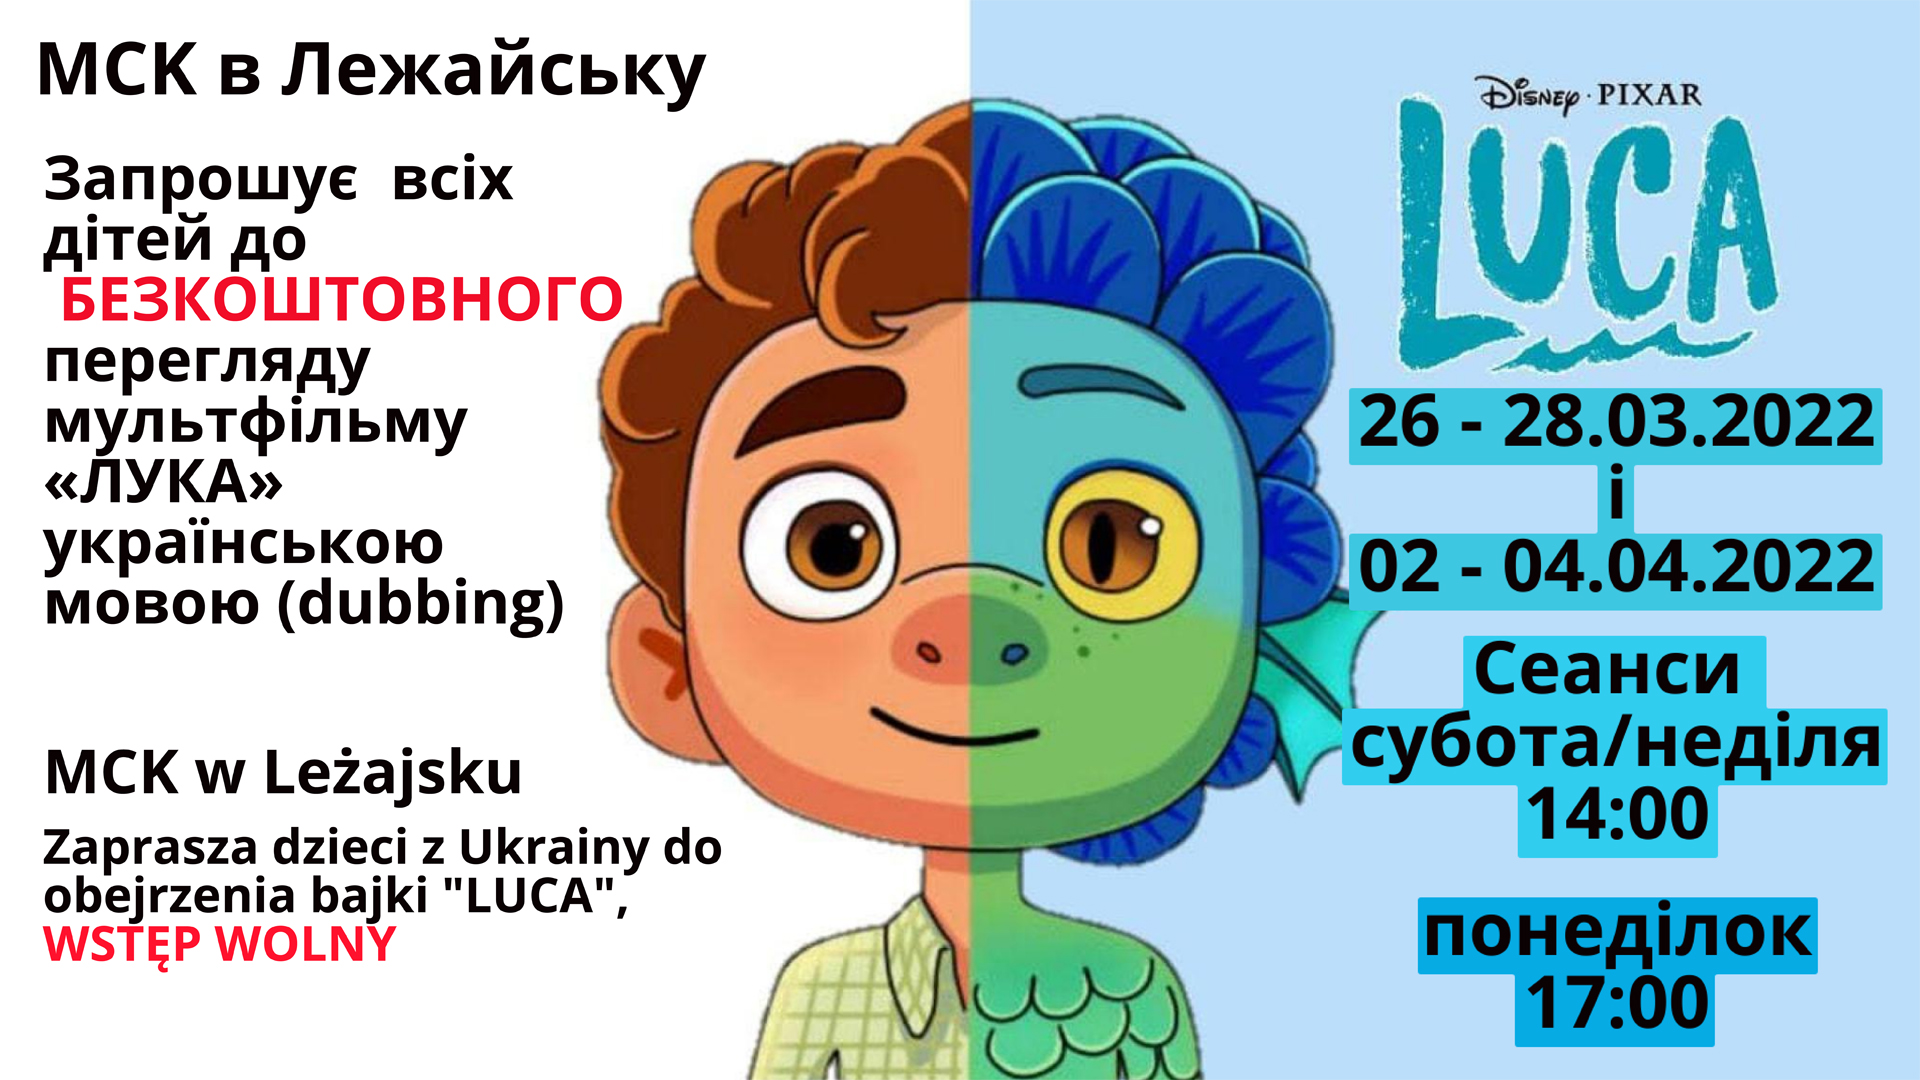 Kino MCK w Leżajsku zaprasza dzieci z Ukrainy na seanse filmów w ukraińskiej wersji dubbingowej